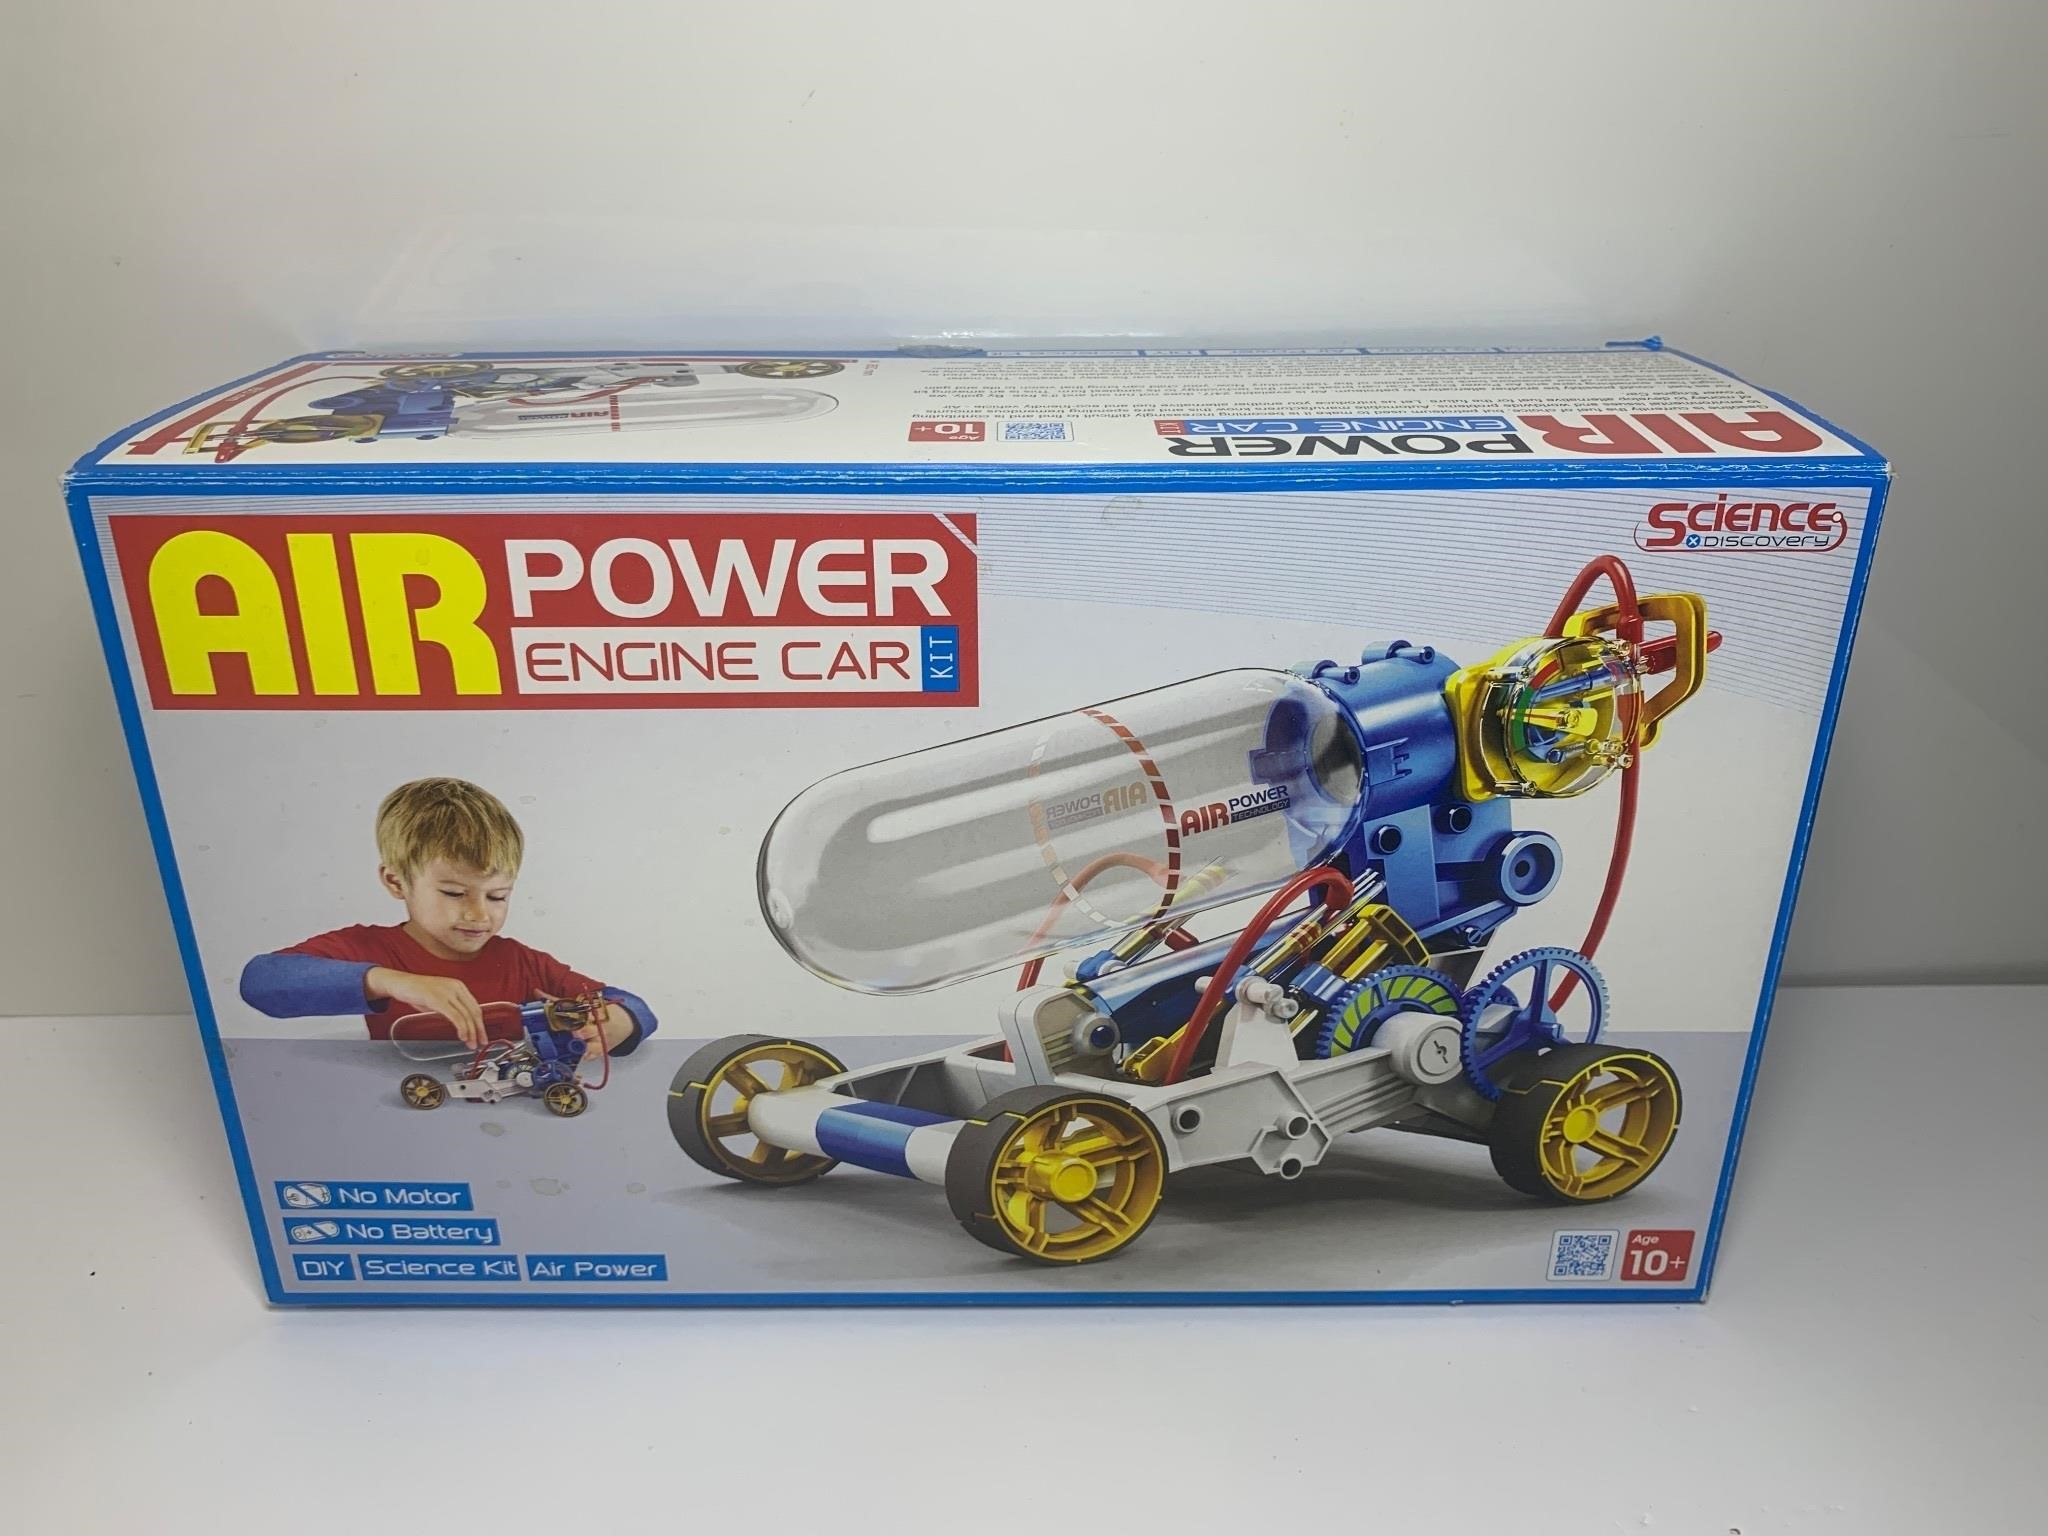 AIR POWER ENGINE CAR KIT